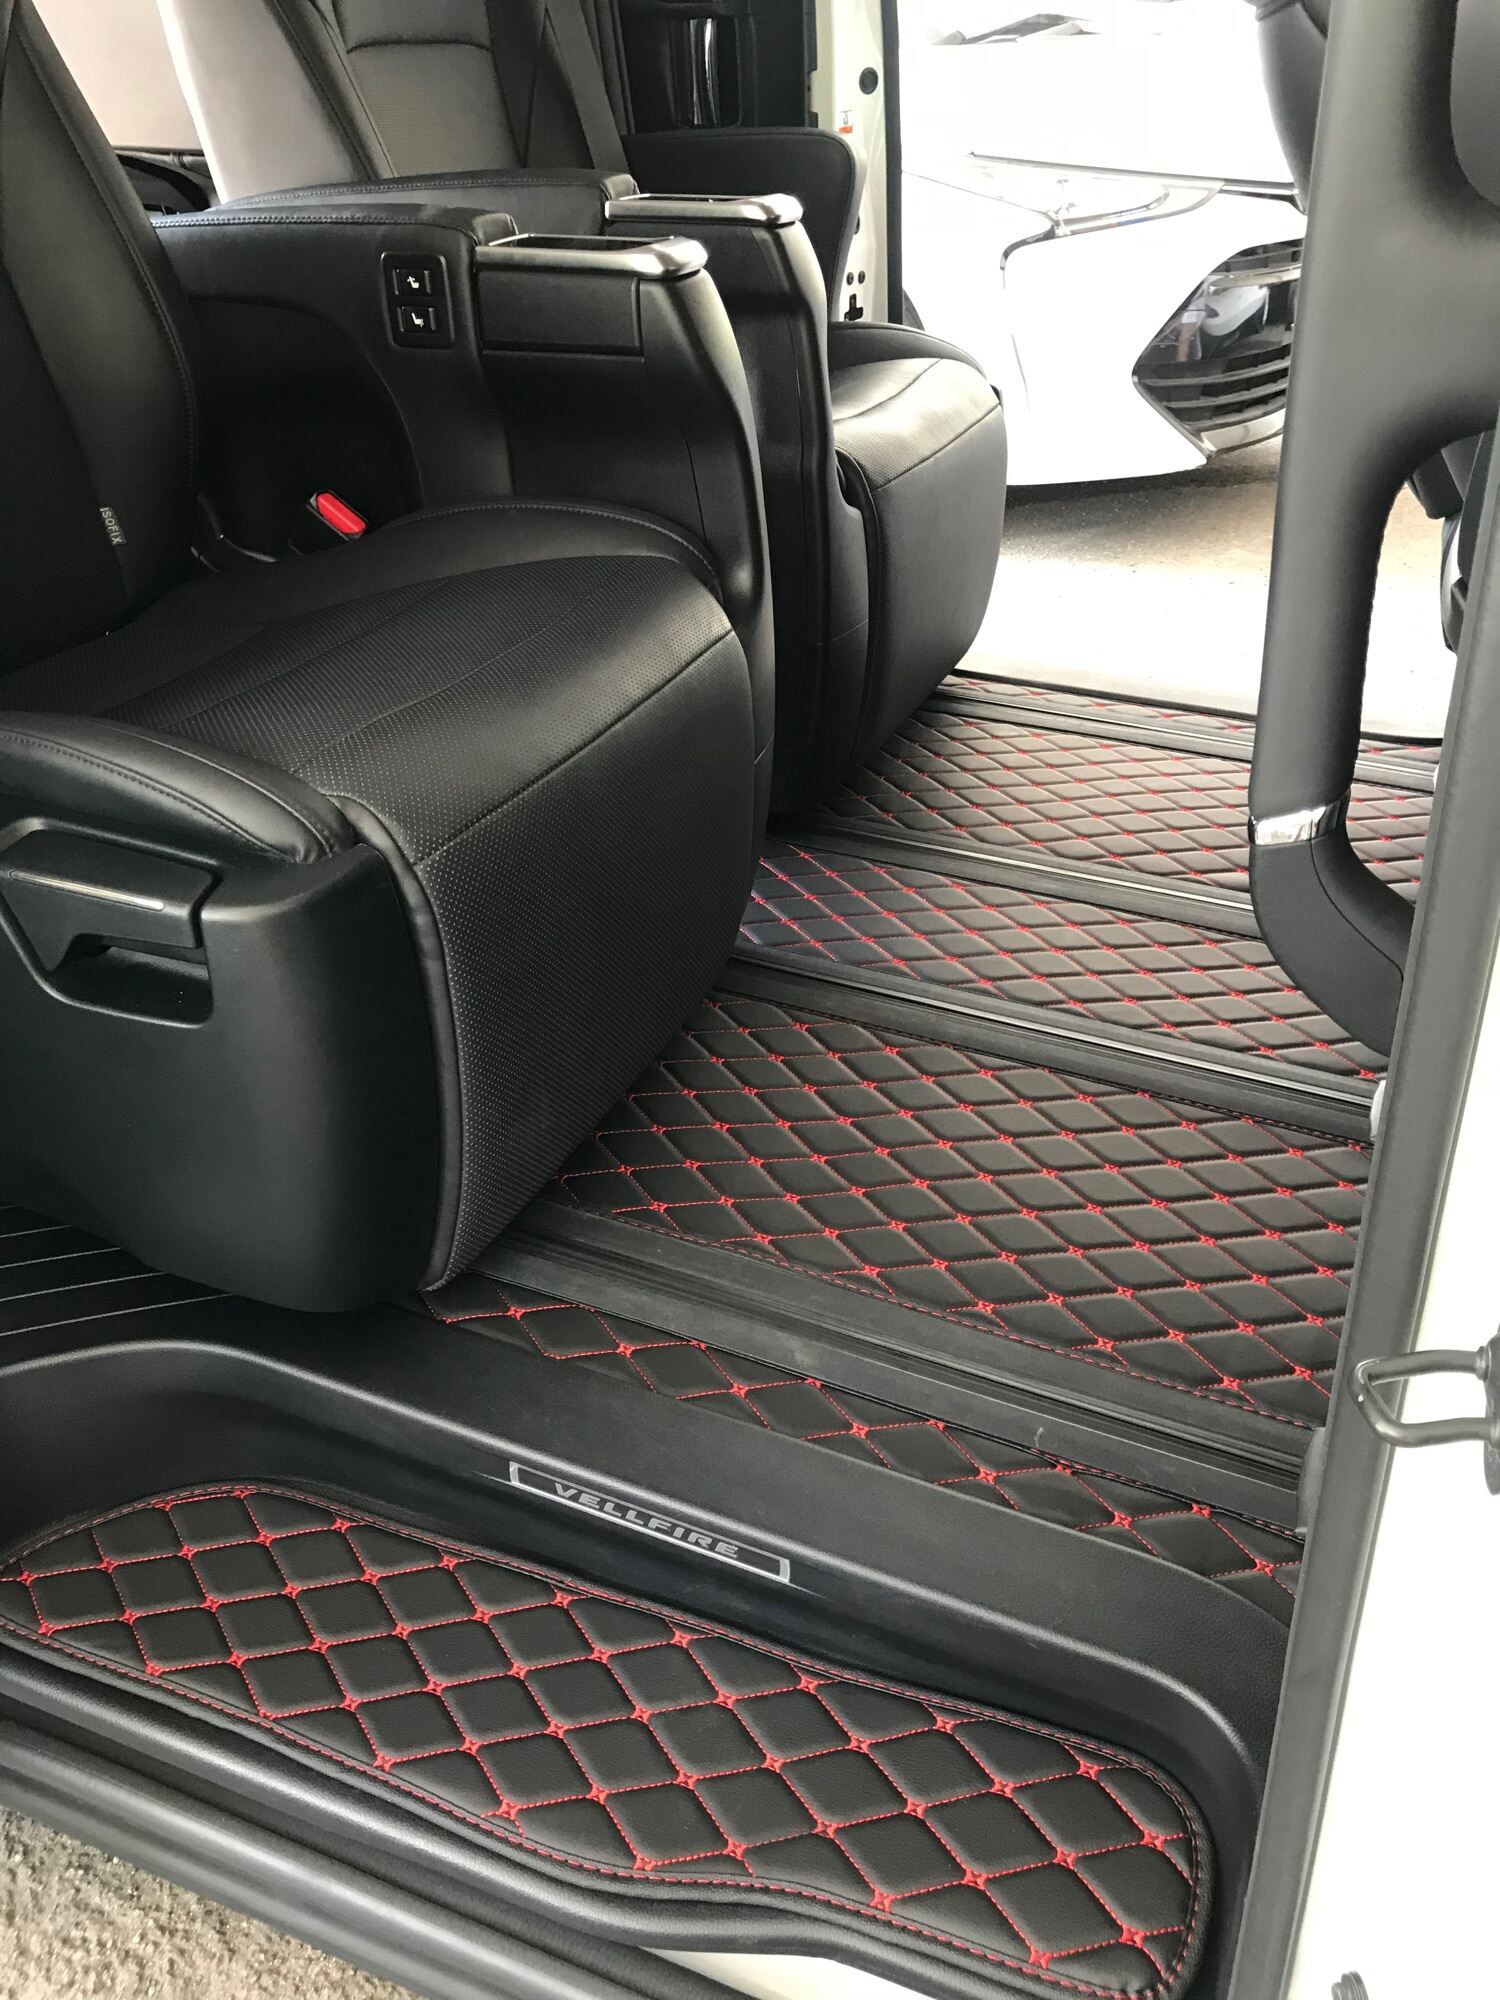 Buy Car Carpet Mat Toyota Vellfire online